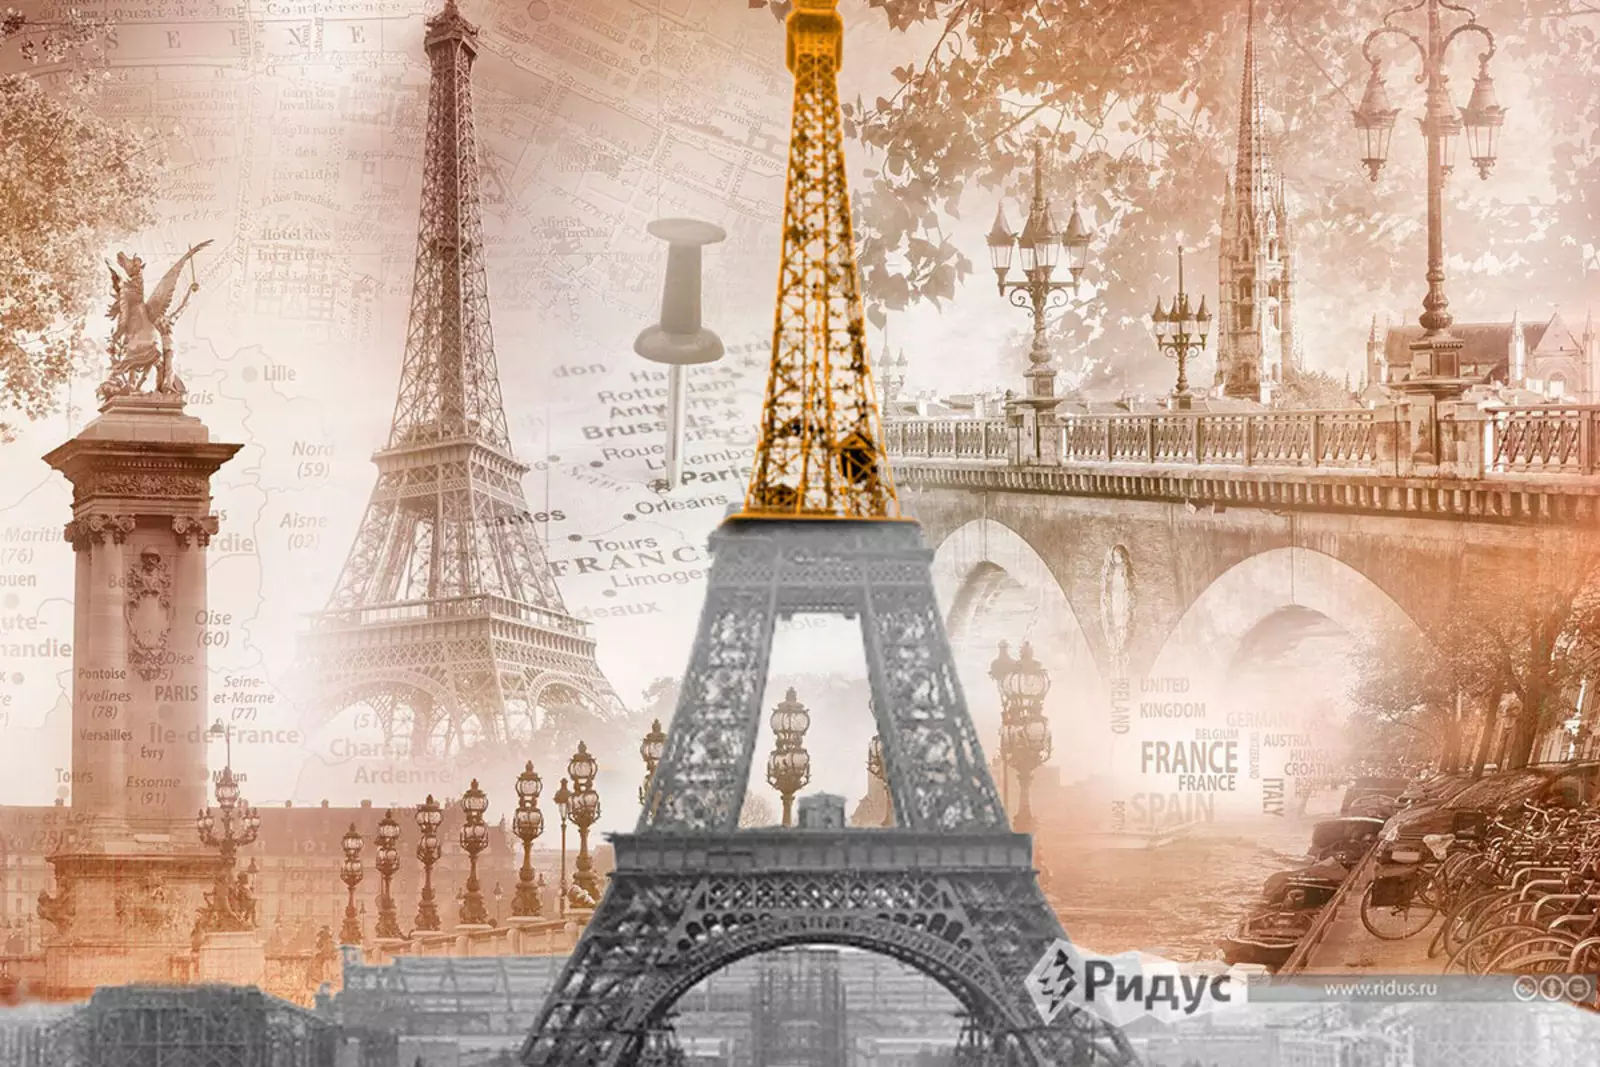 A symbol of paris. Эйфелева башня 1889. Эйфелева башня в Париже 1889 год. Символы Парижа. Открытие Эйфелевой башни.